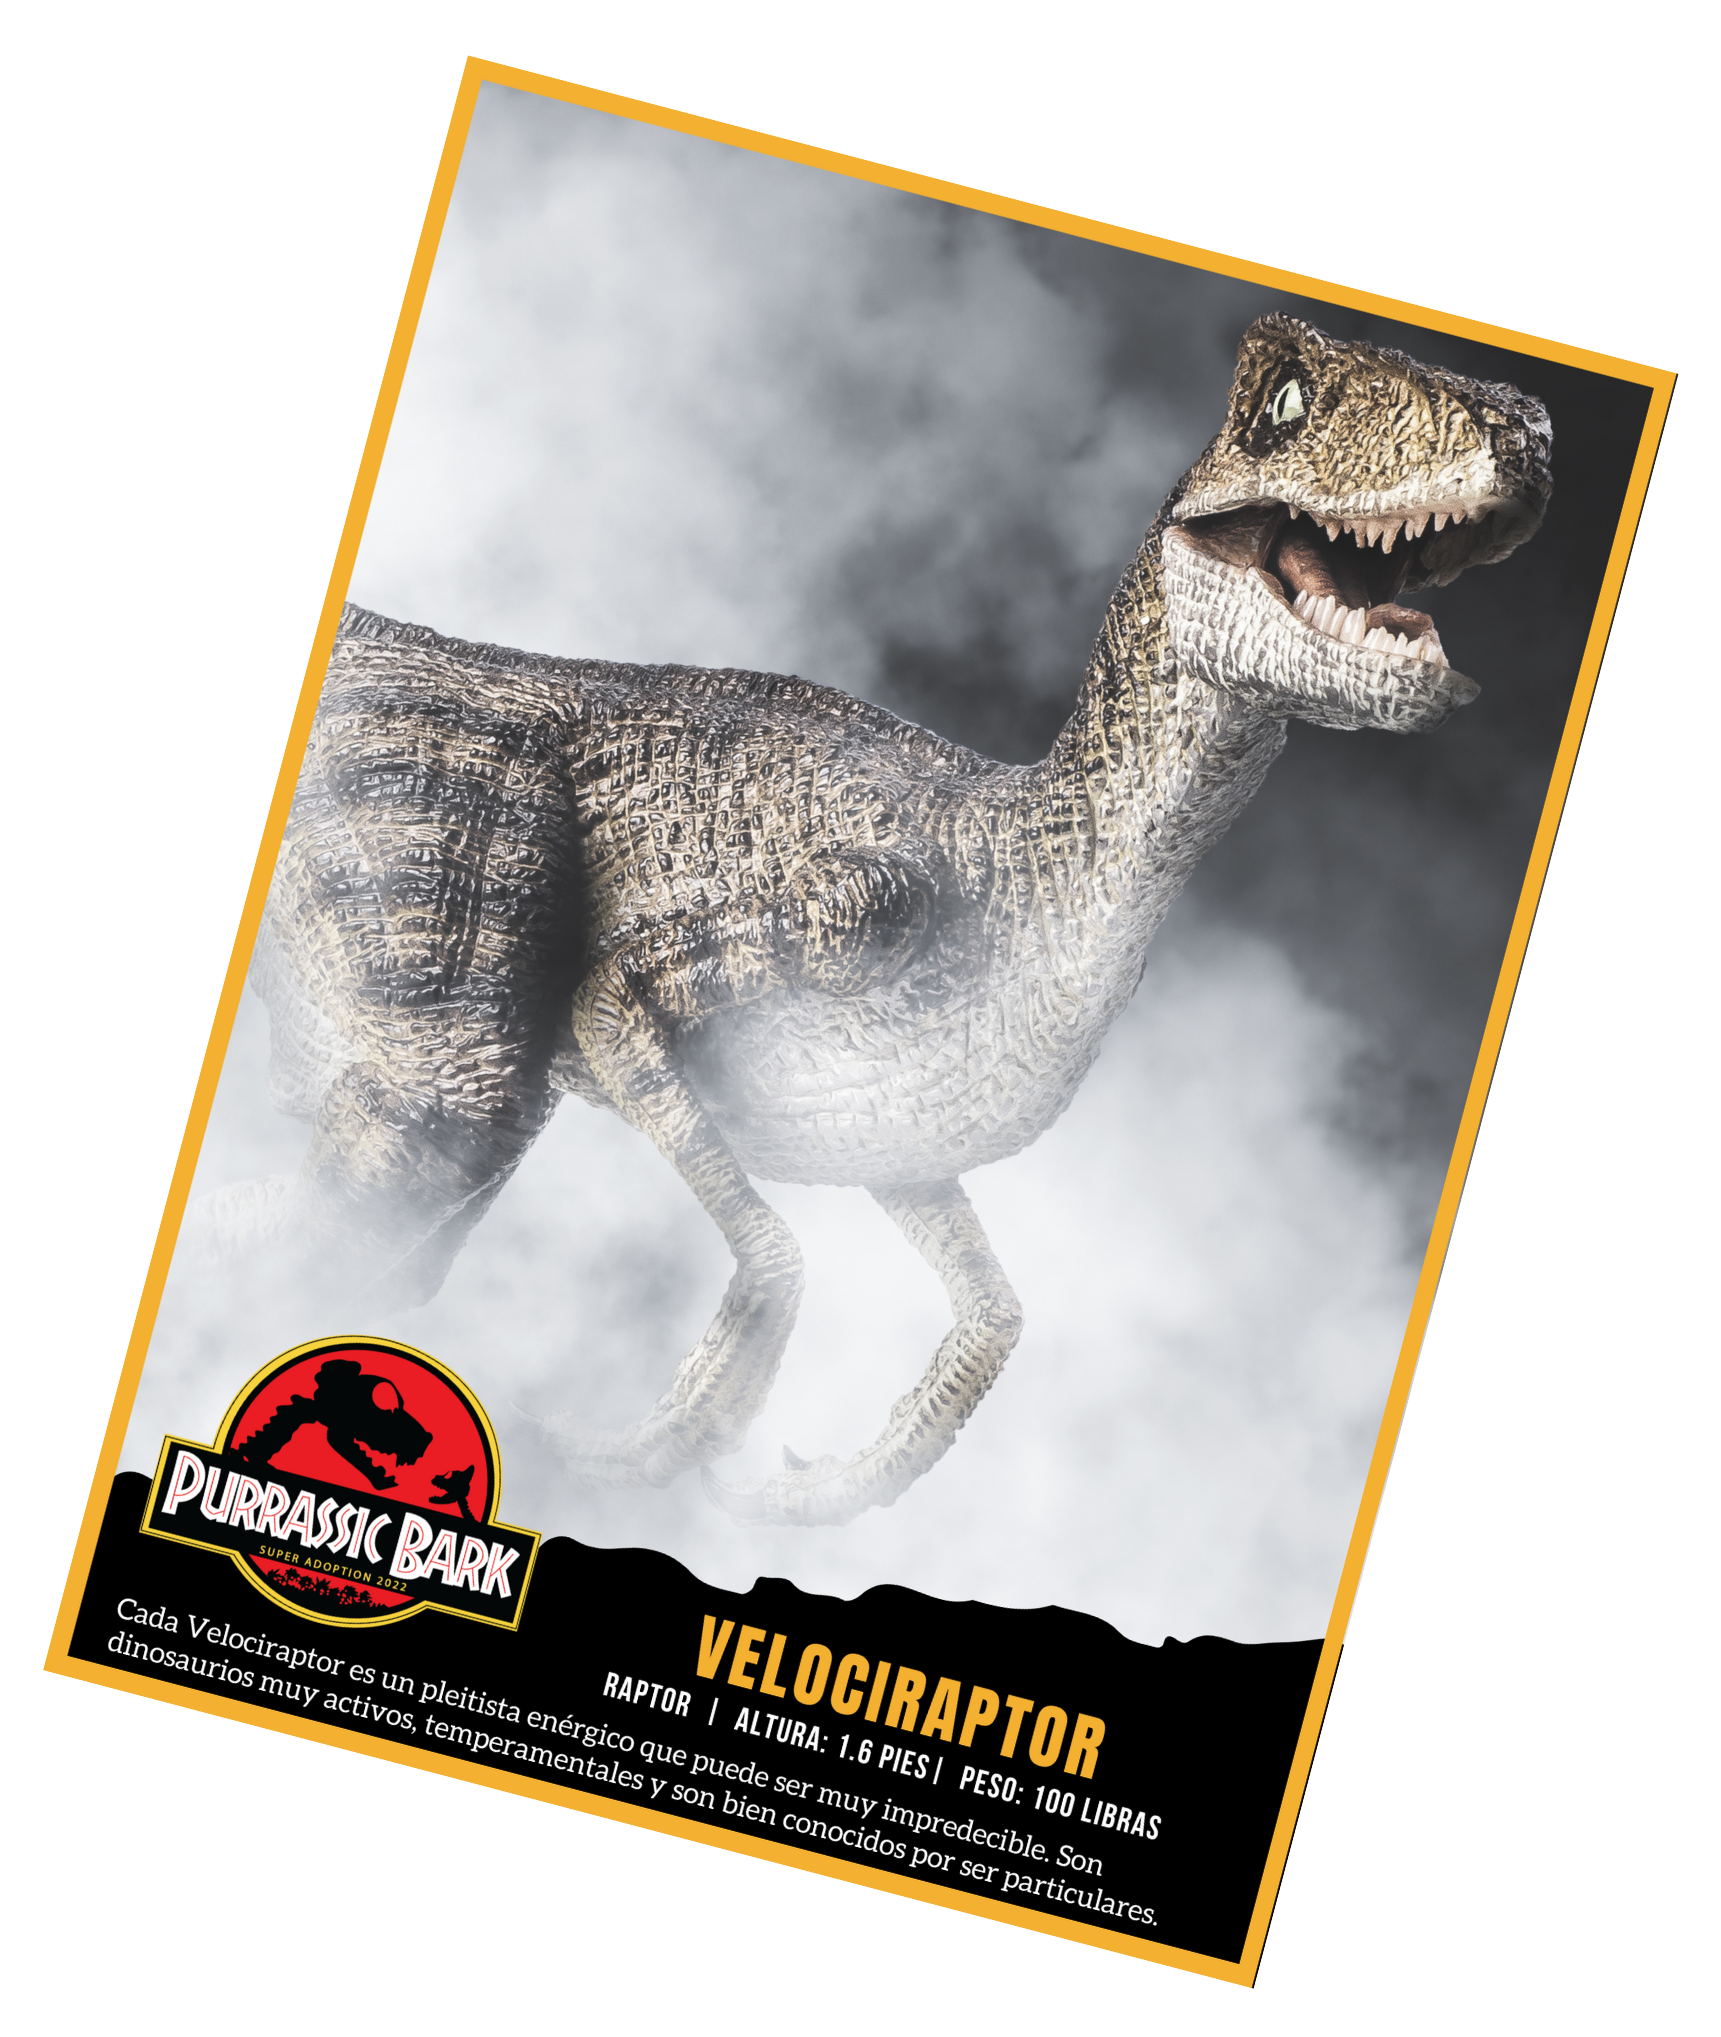 Cada Velociraptor es un pleitista energico que puede ser muy impredecible. Son dinosaurios muy activos, temperamentales y son bien conocidos por ser particulares.